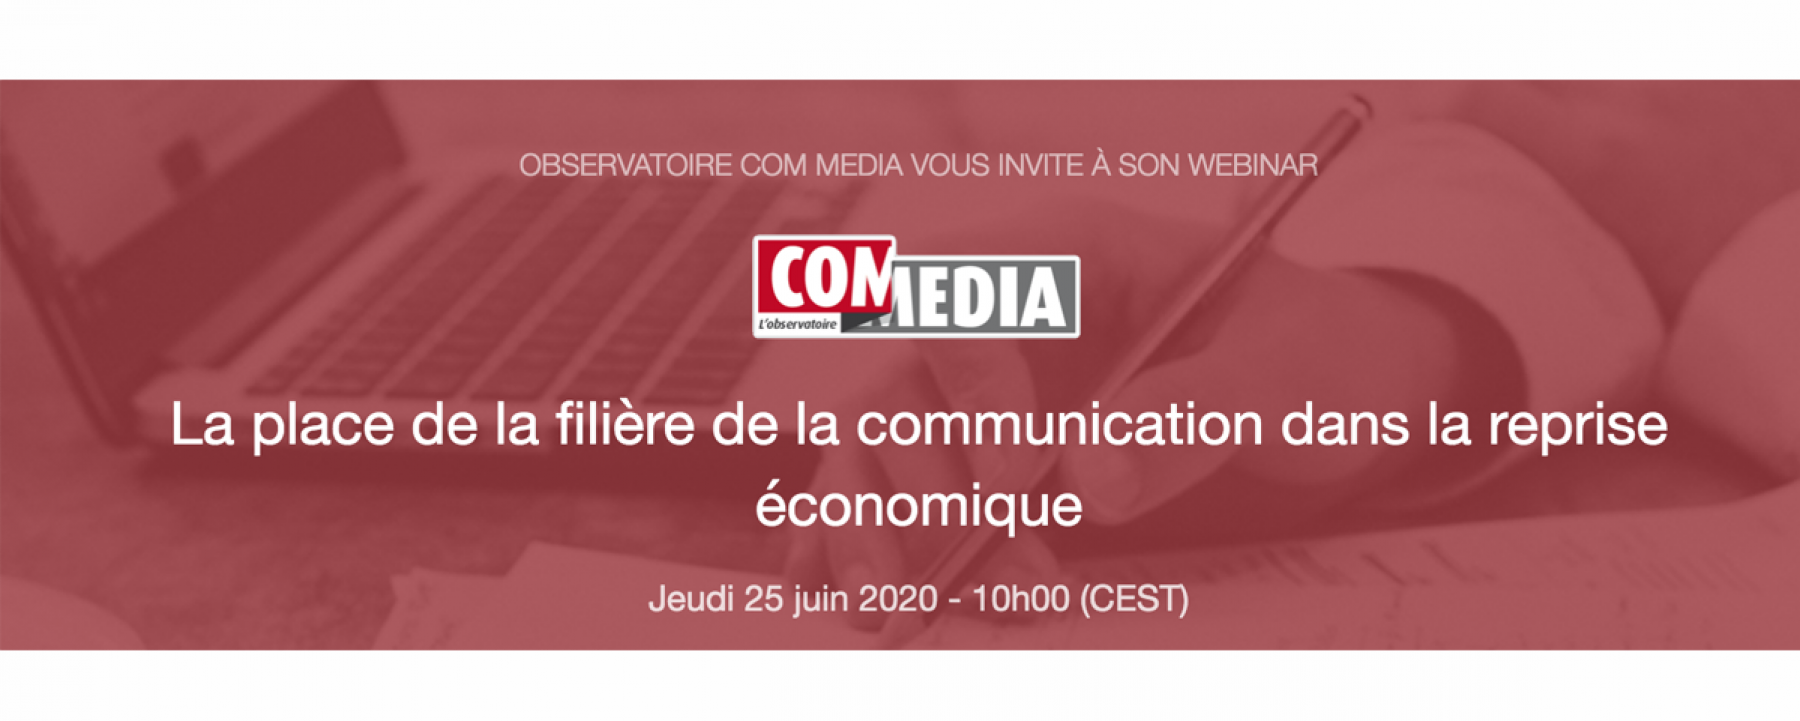 Webinar La place de la filière de la communication dans la reprise économique, le 25 juin 2020, organisé par l'observatoire com media 